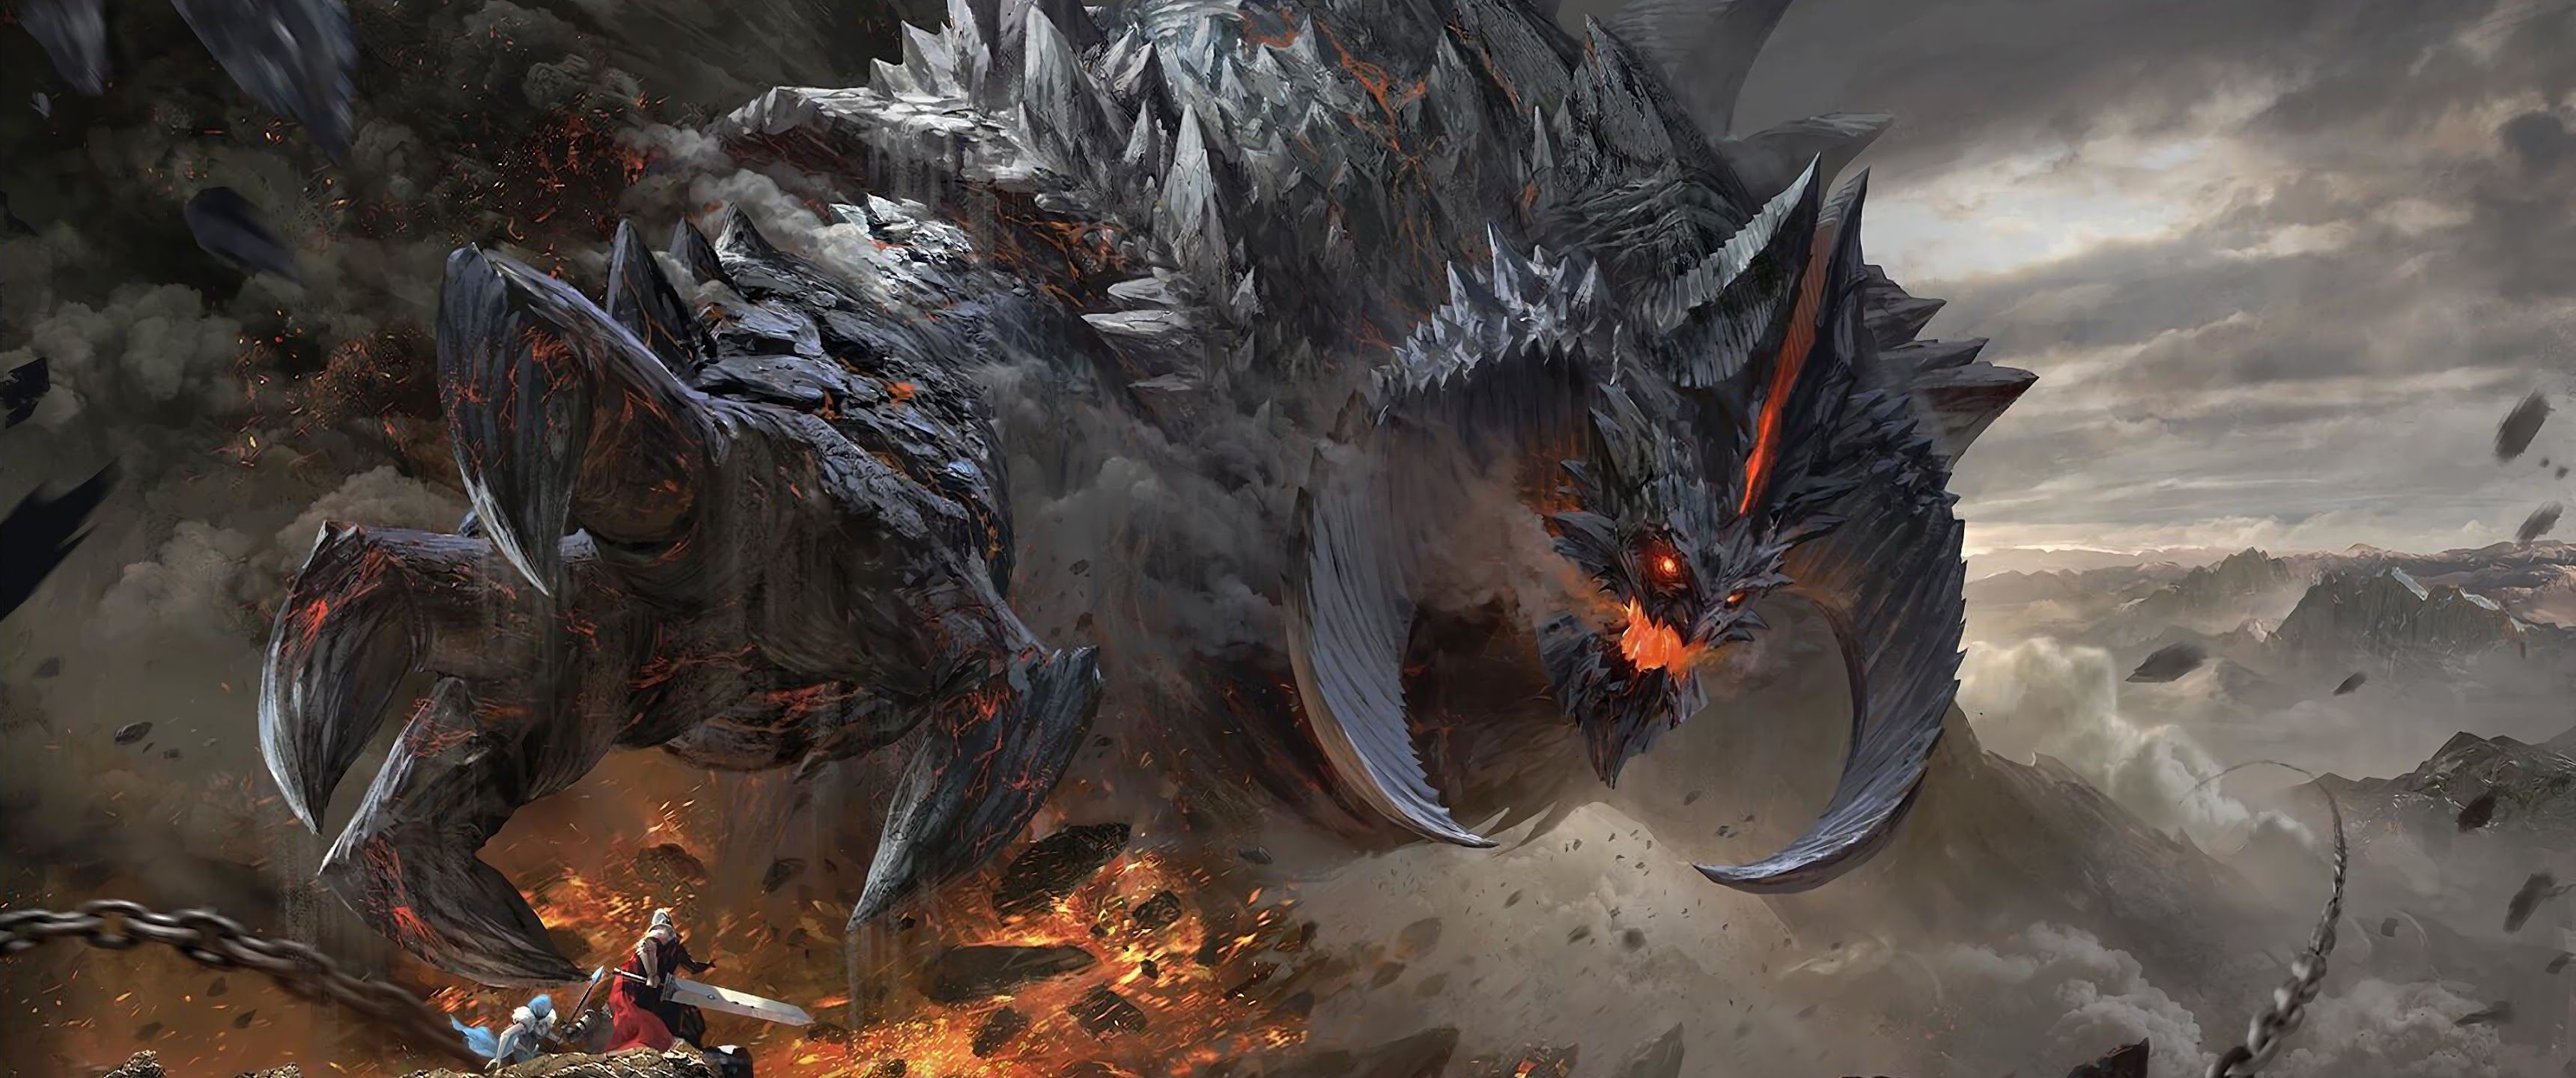 Fantasy Monster Epic Battle 4K Wallpaper